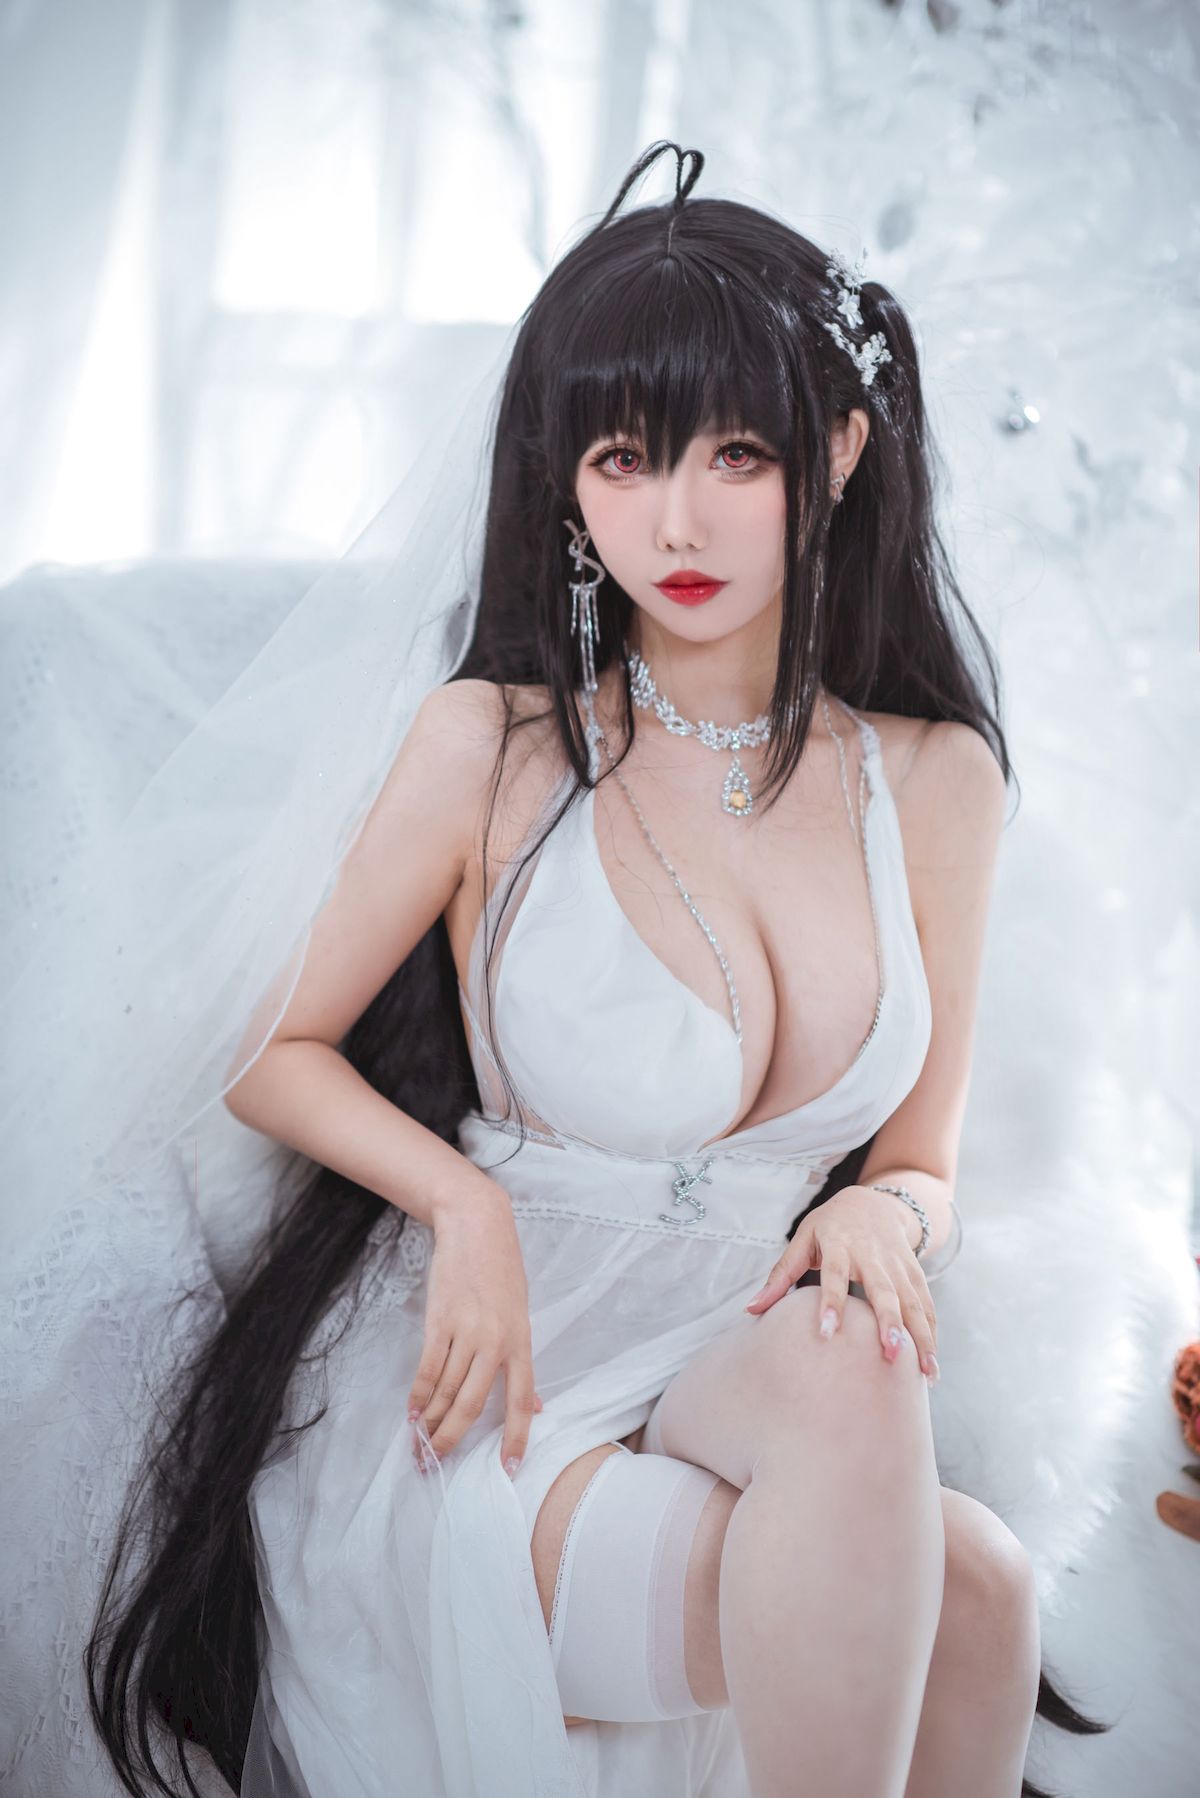 仙女月大凤纯白婚纱白色丝袜系列性感写真